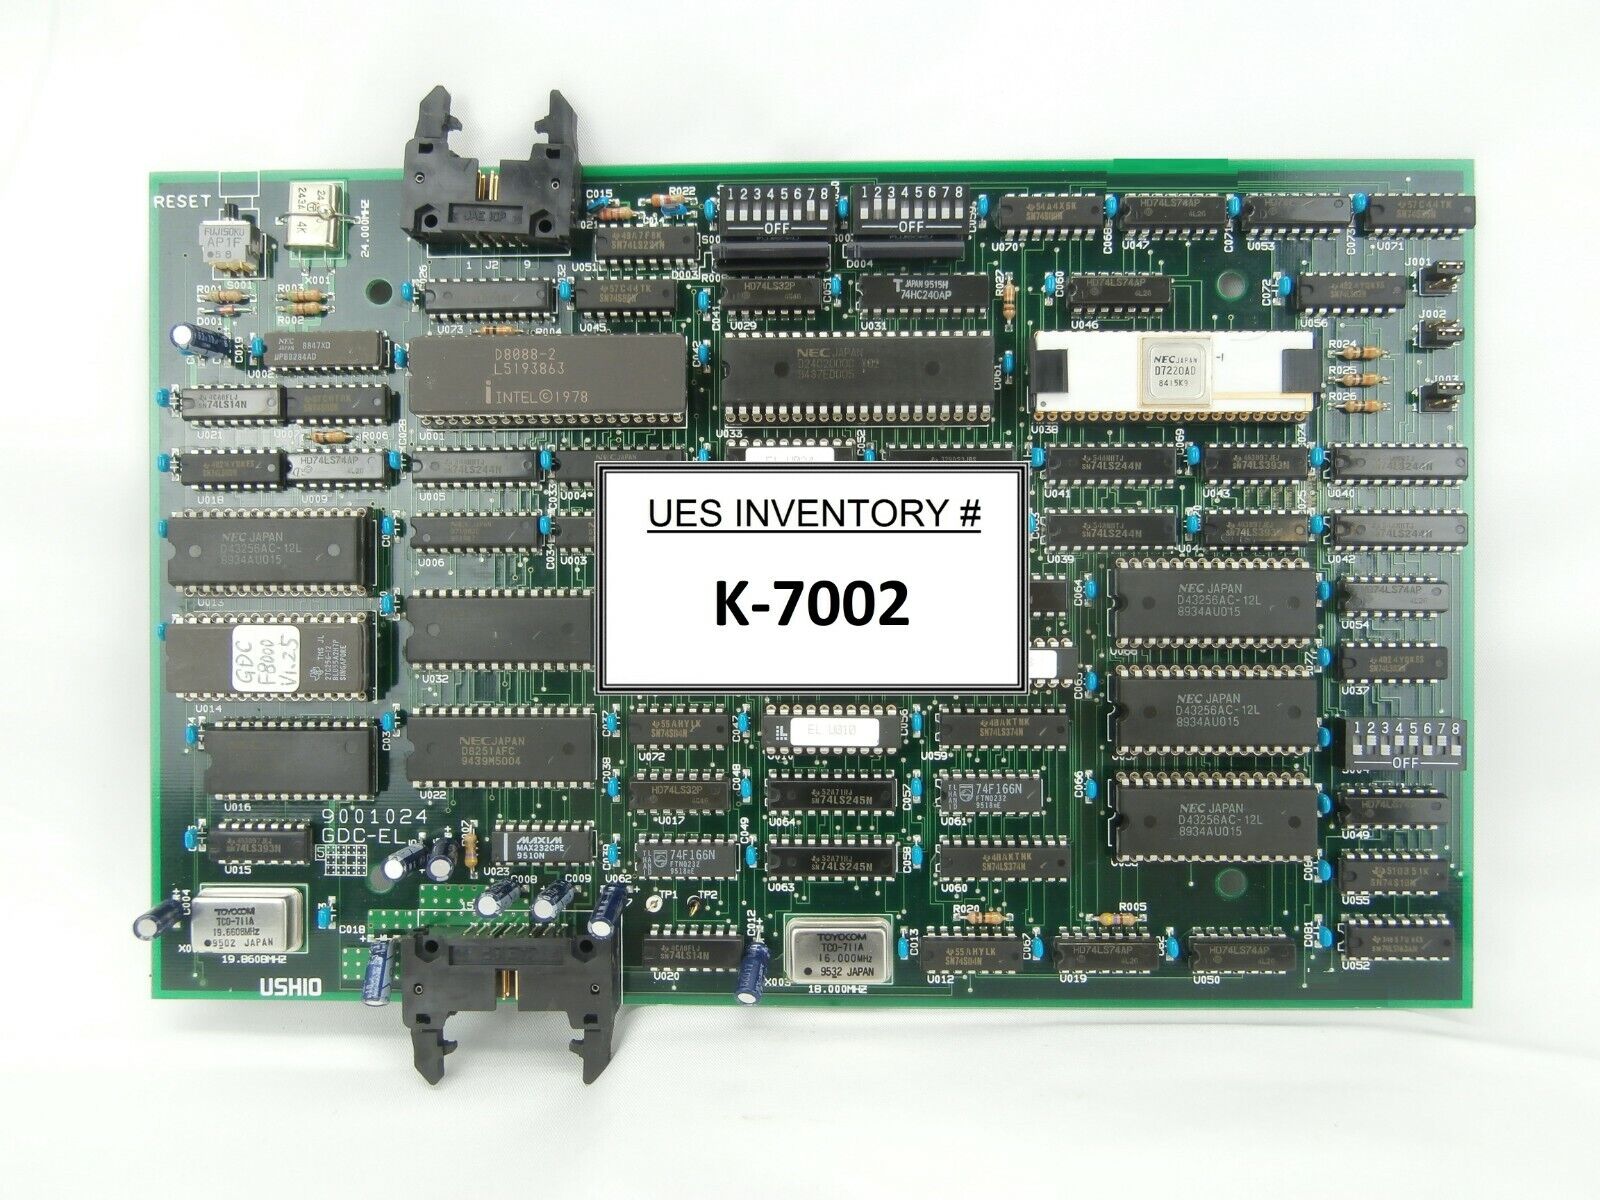 Ushio 9001024 Processor Interface PCB GDC-EL SVG 90S DUV Working Spare